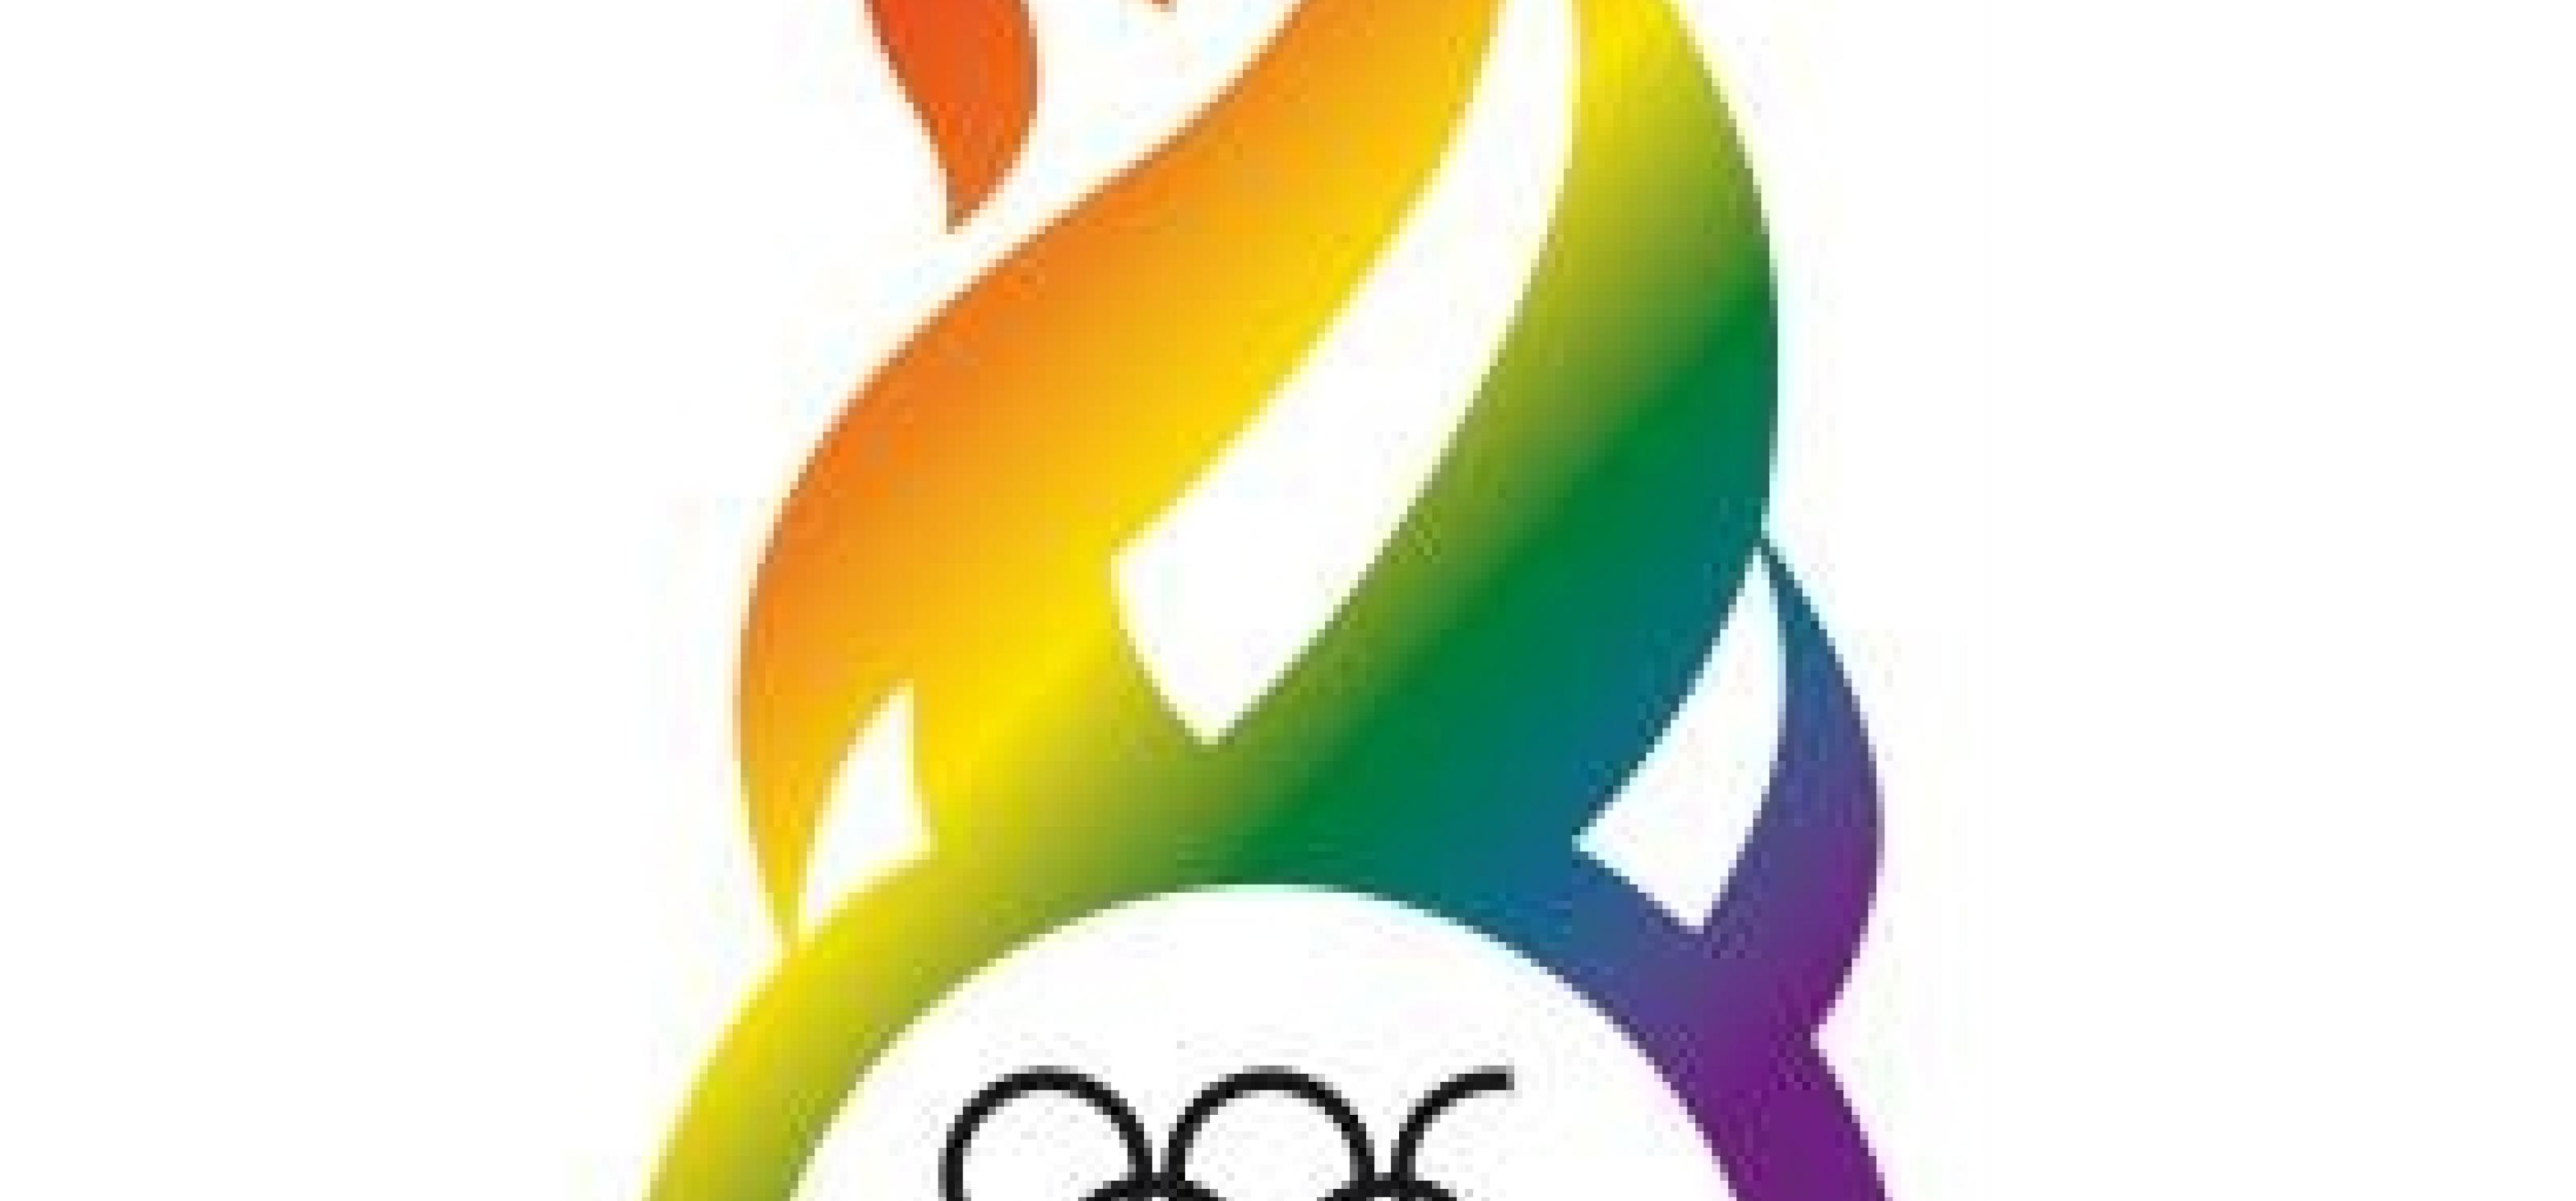 Flamme in Regenbogenfarben mit olympischen Ringen